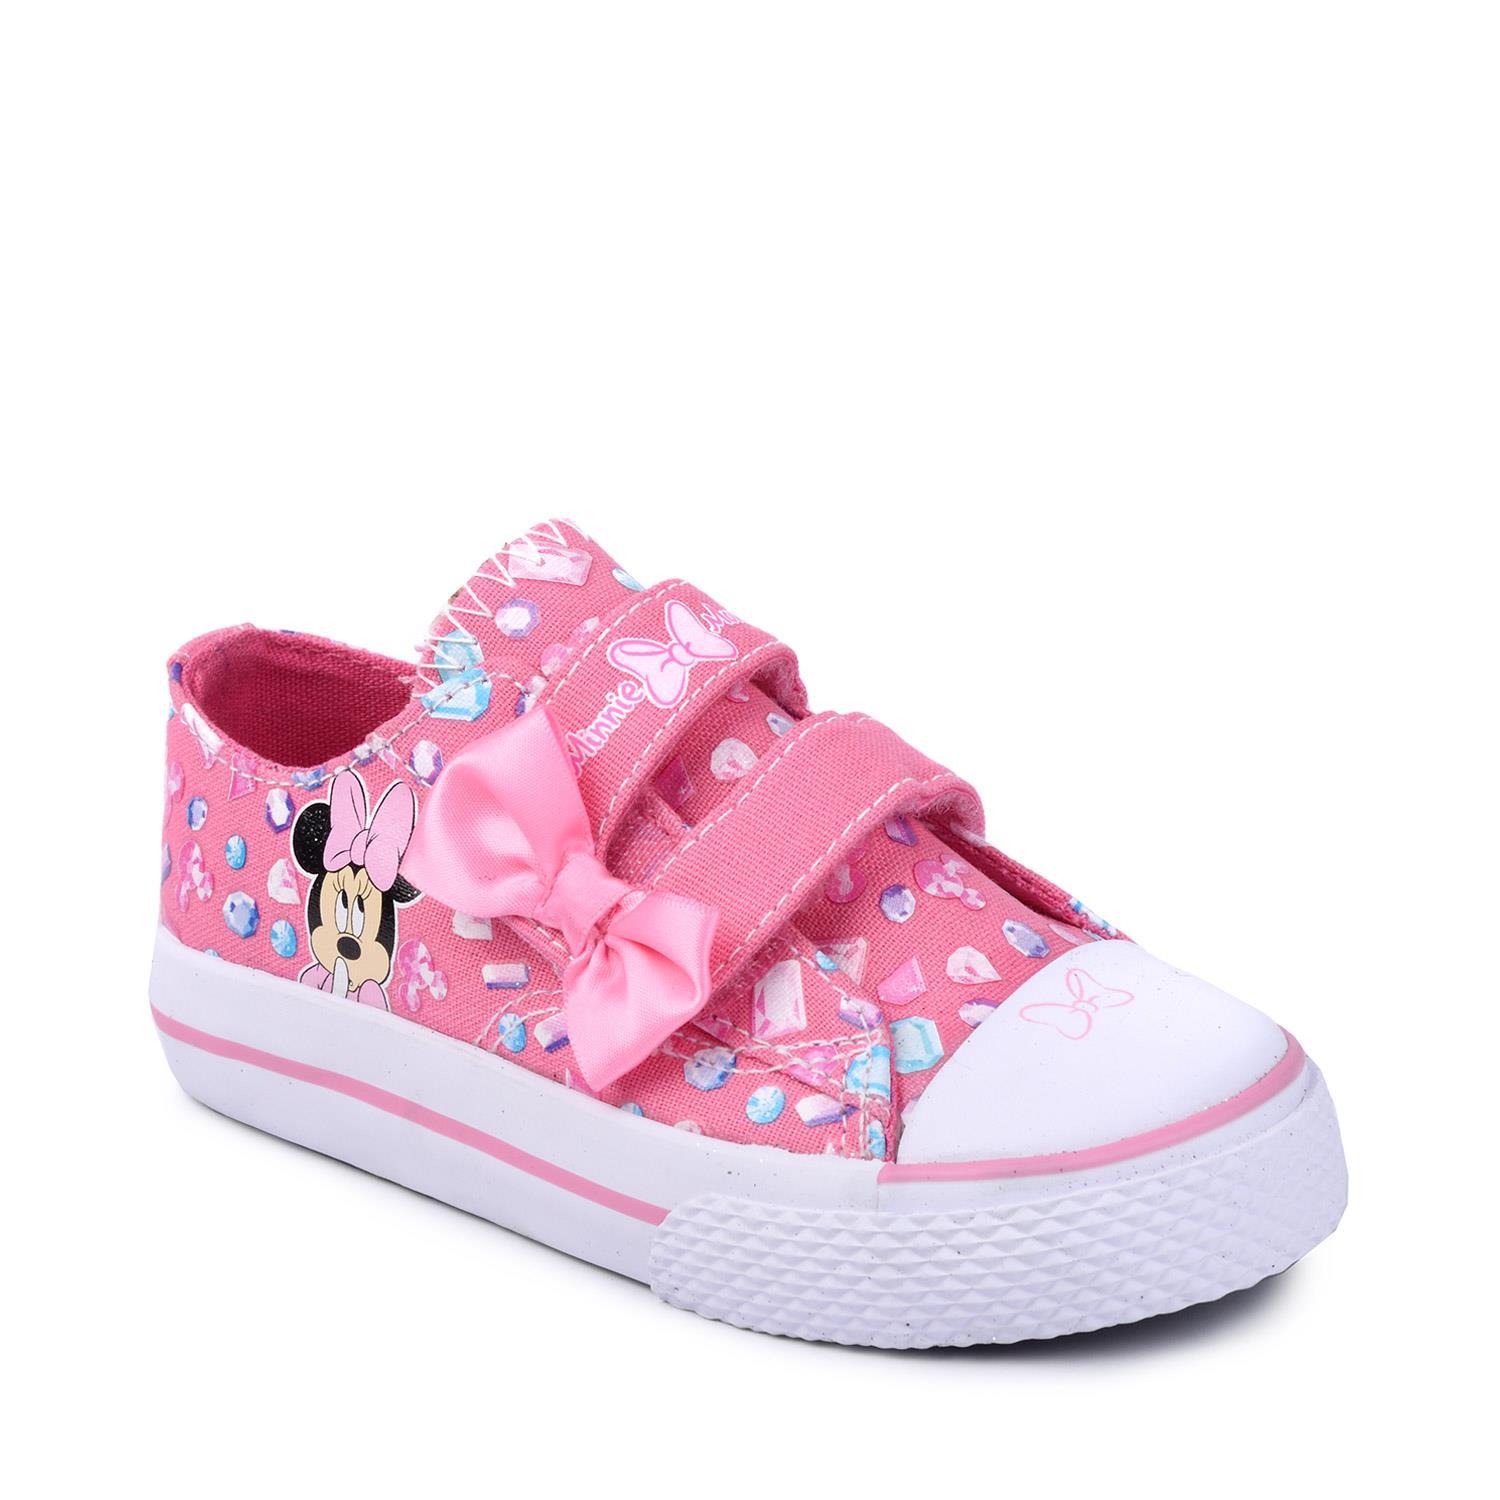 ROBO รองเท้าลำลองเด็กผู้หญิง Toddler Minnie Jewel Legacee Sneaker รุ่น 175943 สีชมพู ไซส์ US 8